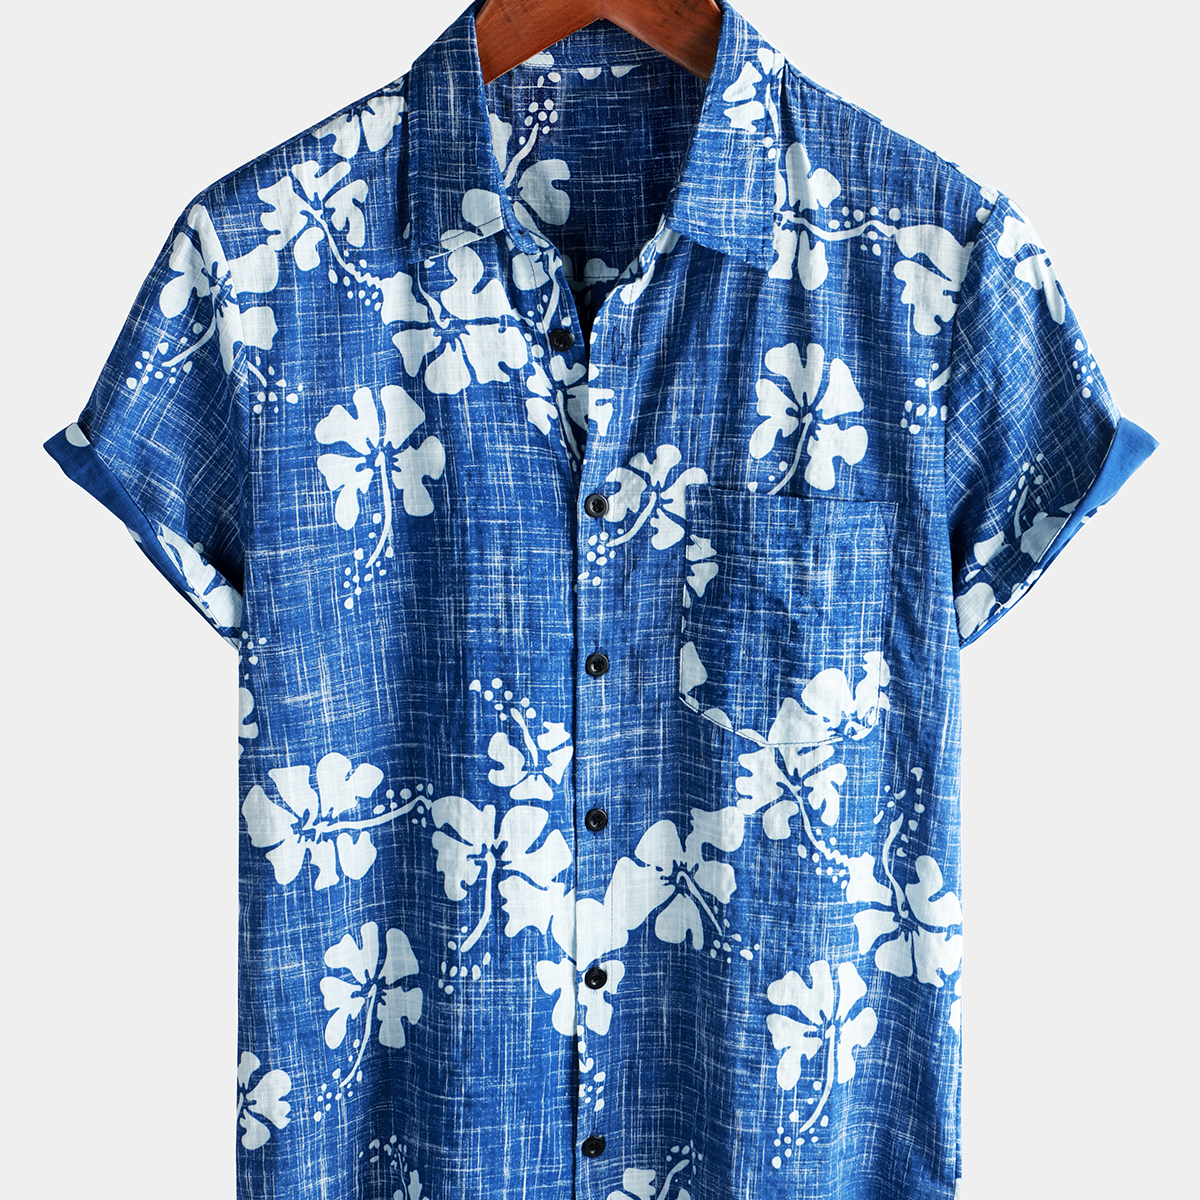 Camisa hawaiana tropical de playa con botones de manga corta vintage floral rojo para hombre